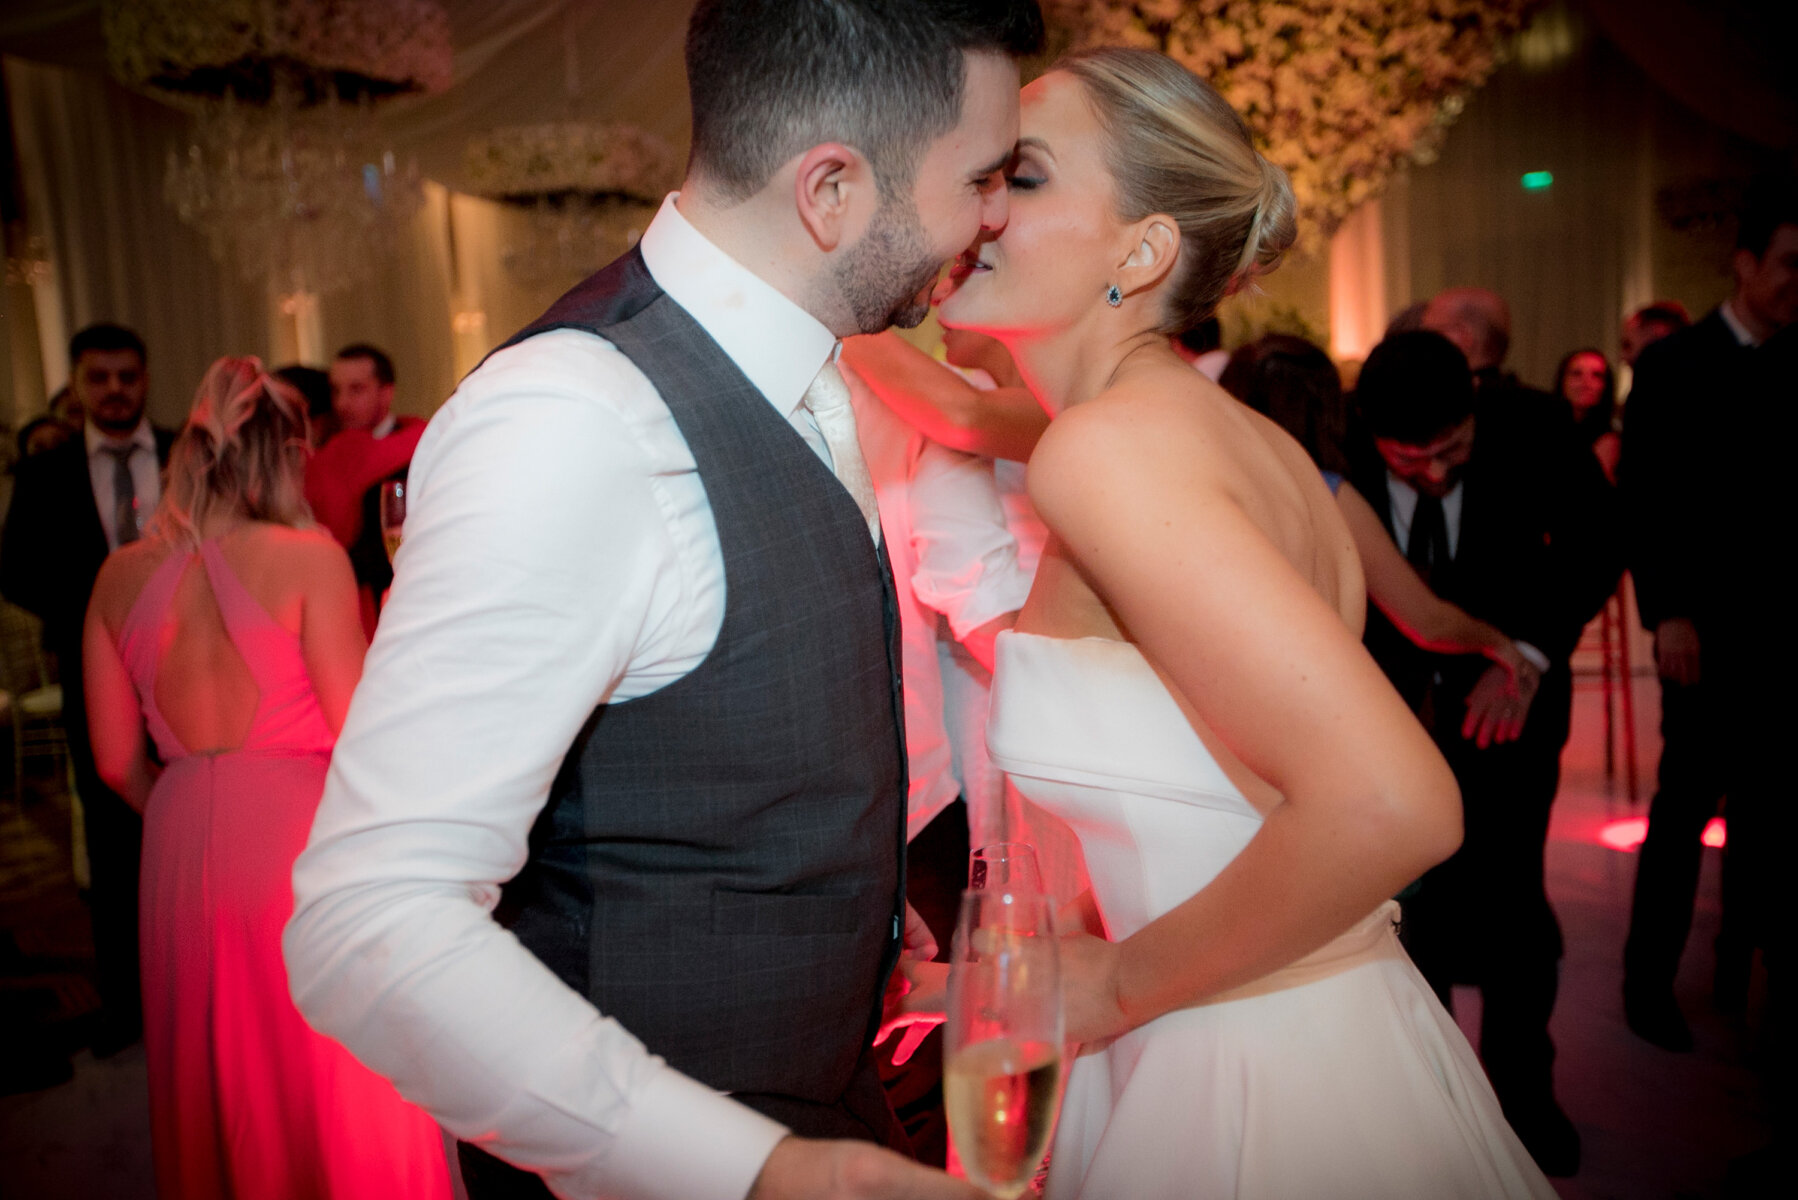 Júlia e Tiago se beijando na pista de dança no casamento